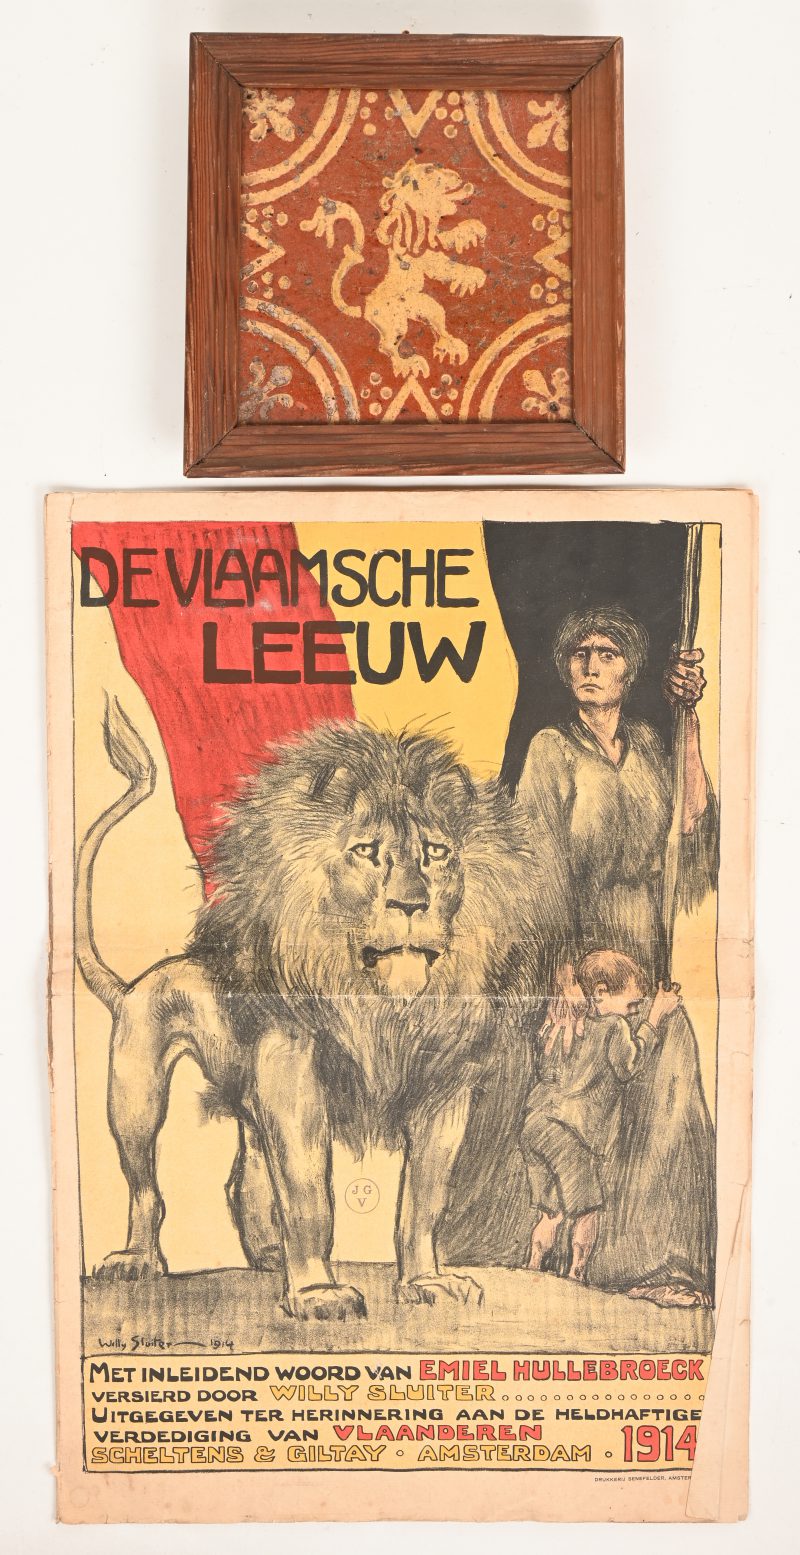 Een antieke aardewerken tegel met een geglazuurd decor van een leeuw. Bijgevoegd een uitgave van “De Vlaamsche leeuw” uit 1914.